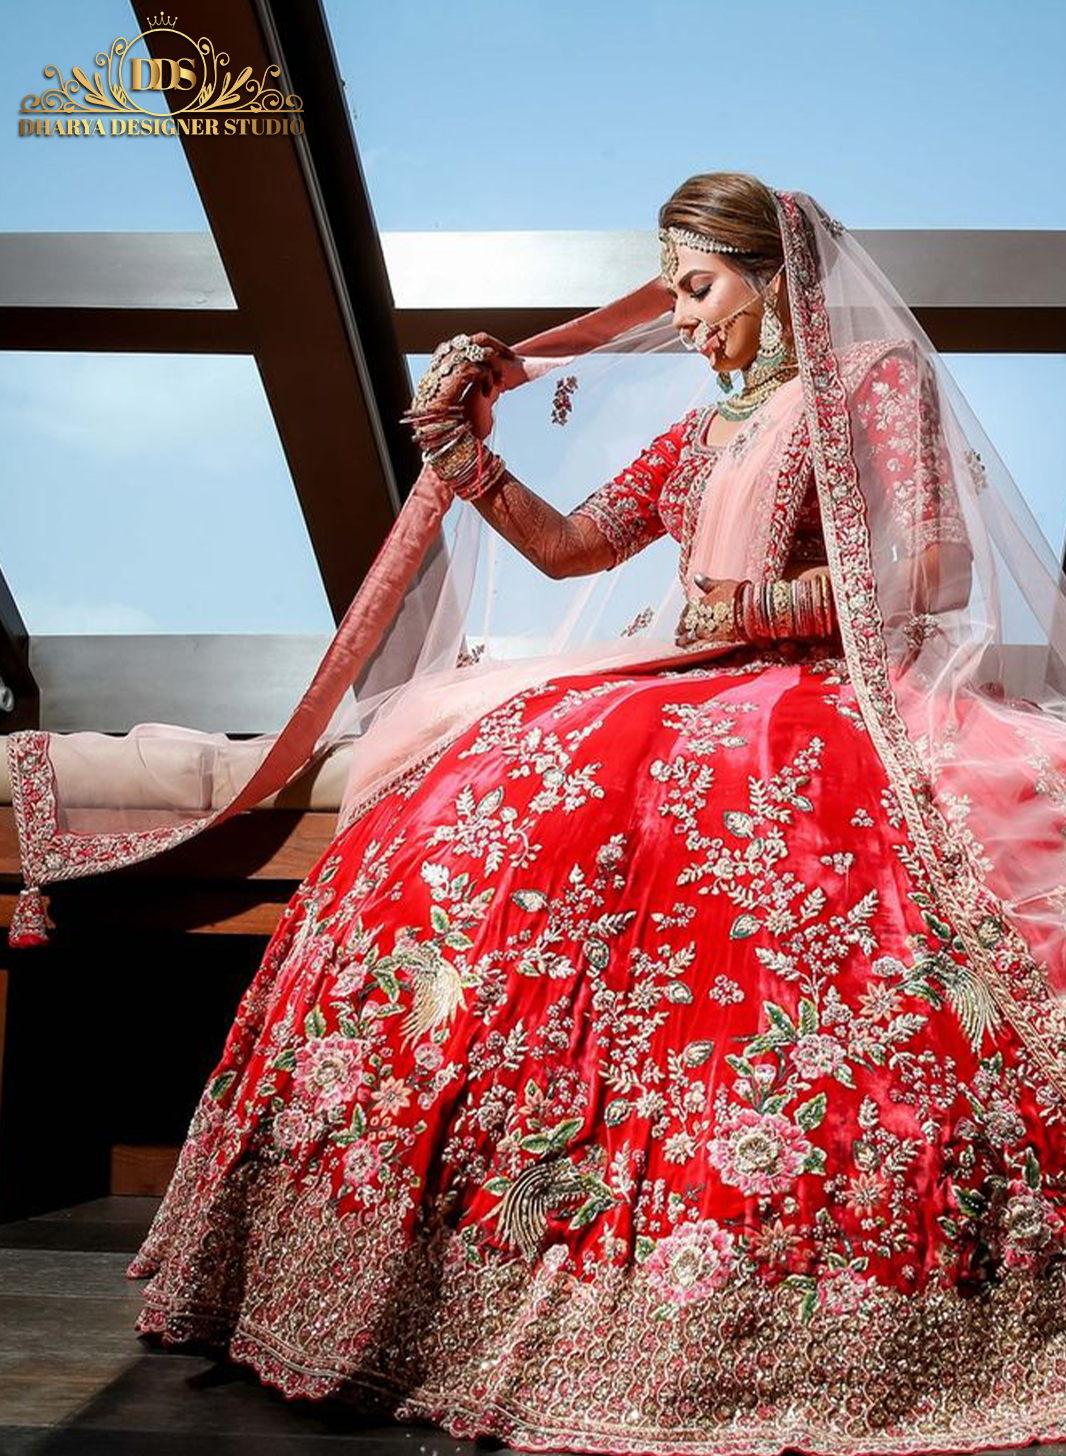 Top 15 Best Wedding Dresses Shop for Men in Hyderabad - Suit&Sherwani